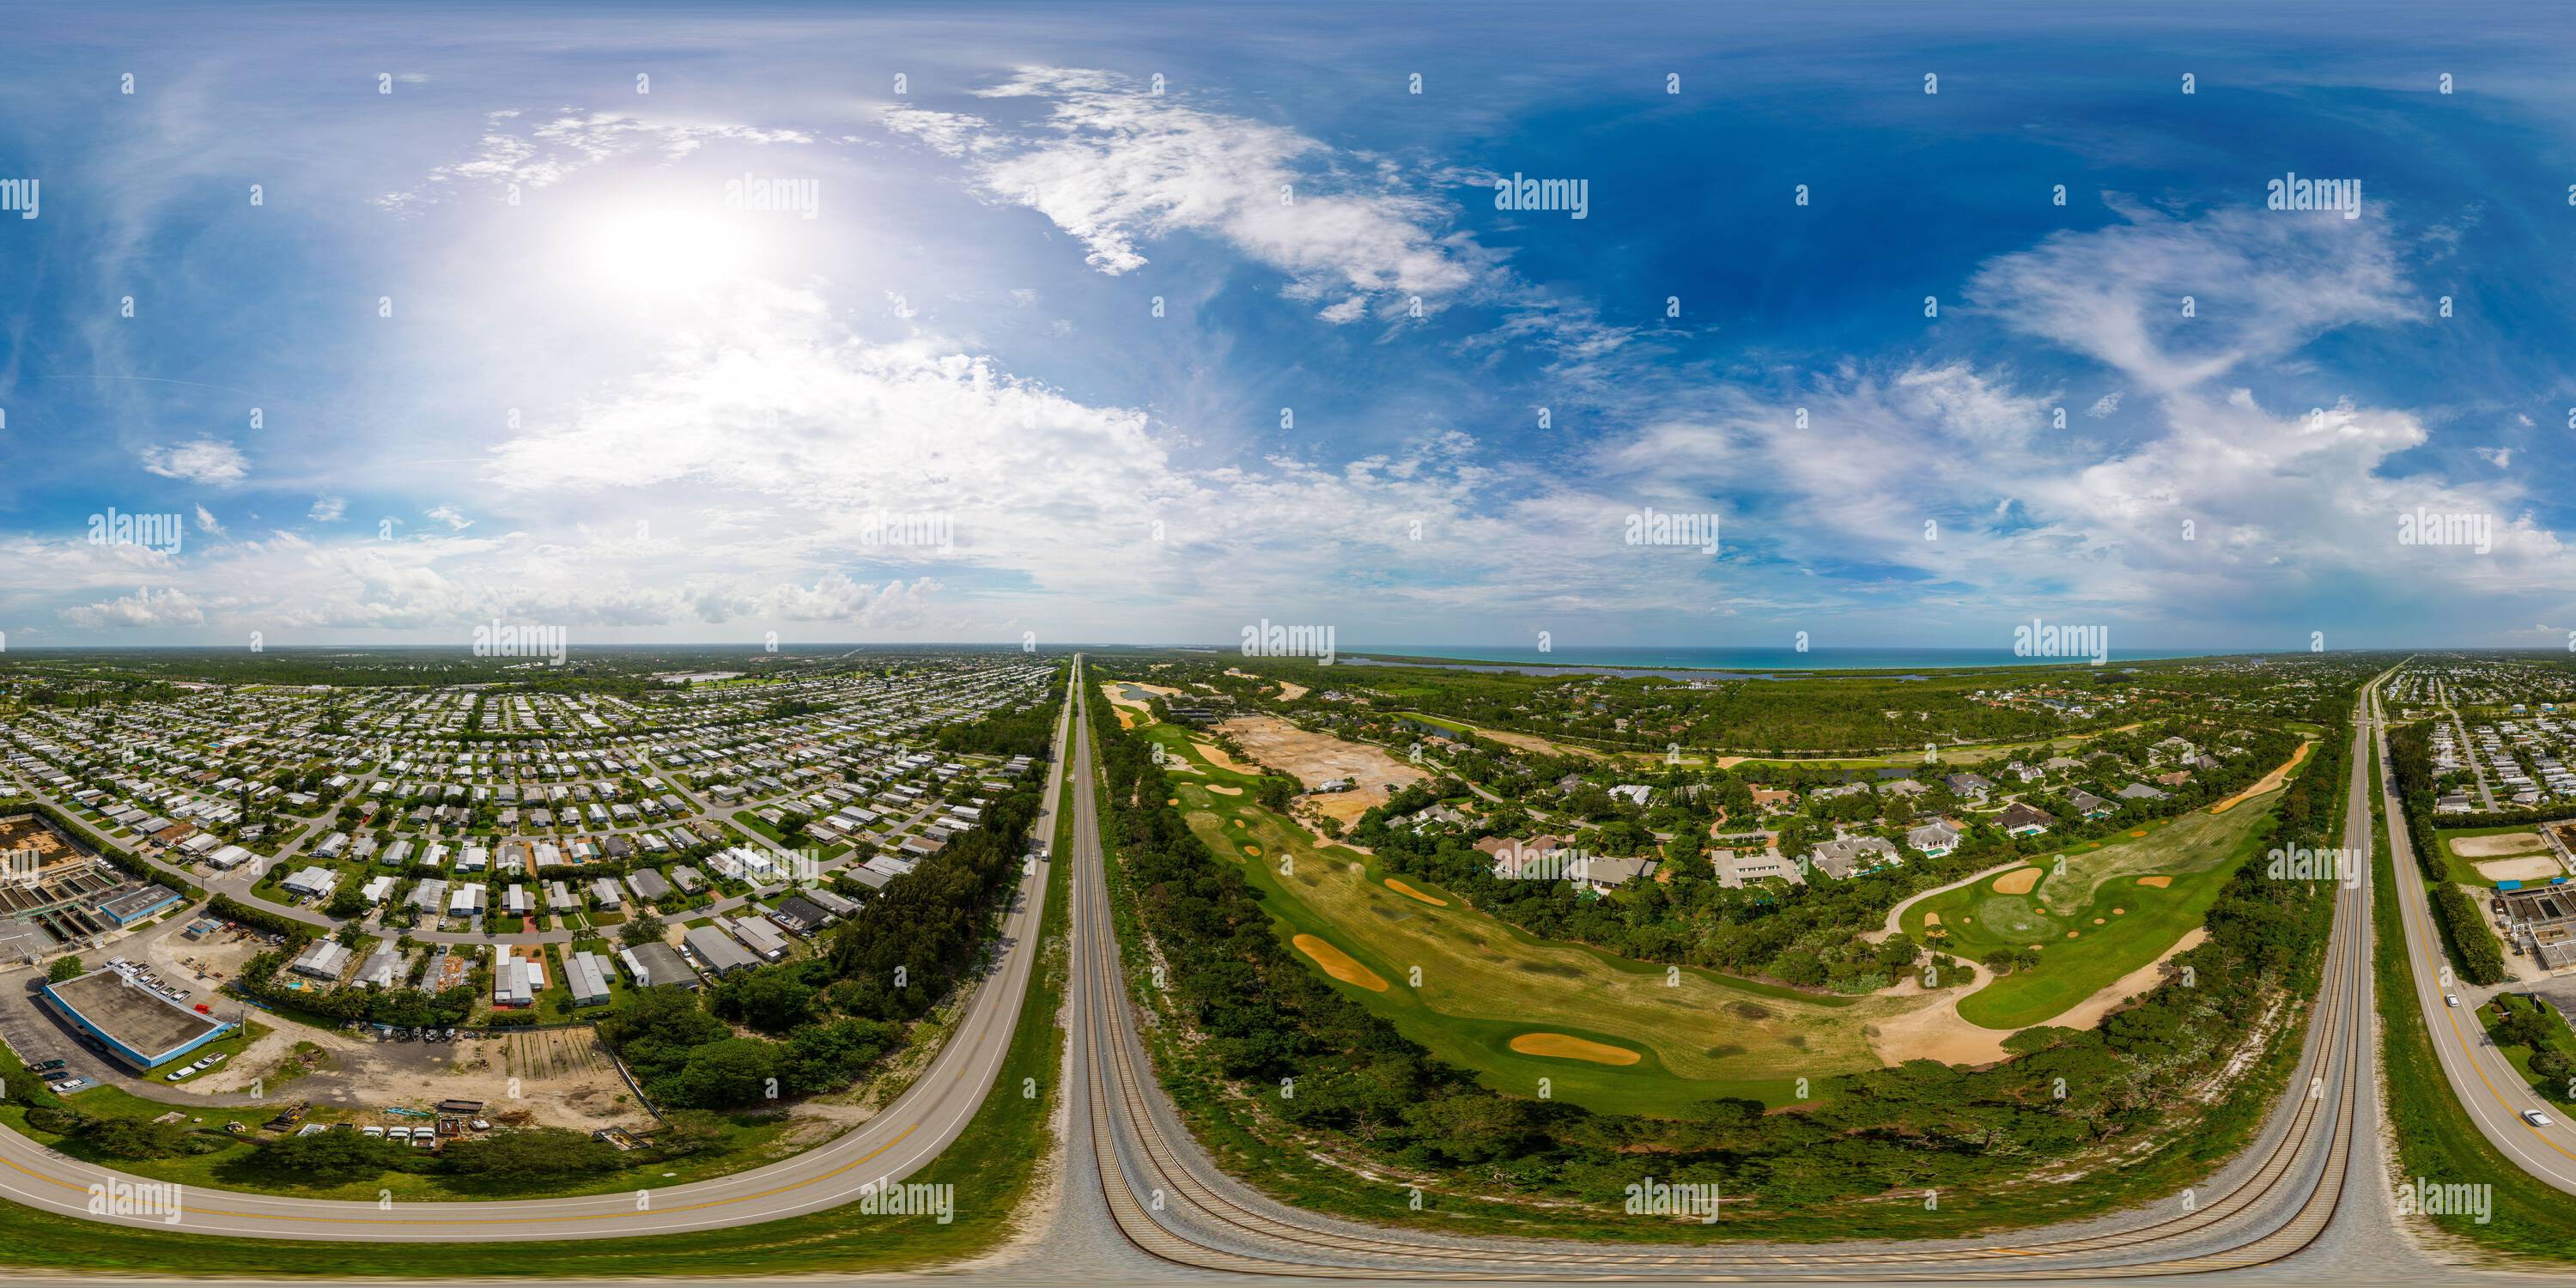 360 Grad Panorama Ansicht von Aerial 360 Photo Railroad Tracks trennen reiche von armen Vierteln in Hobe Sound FL